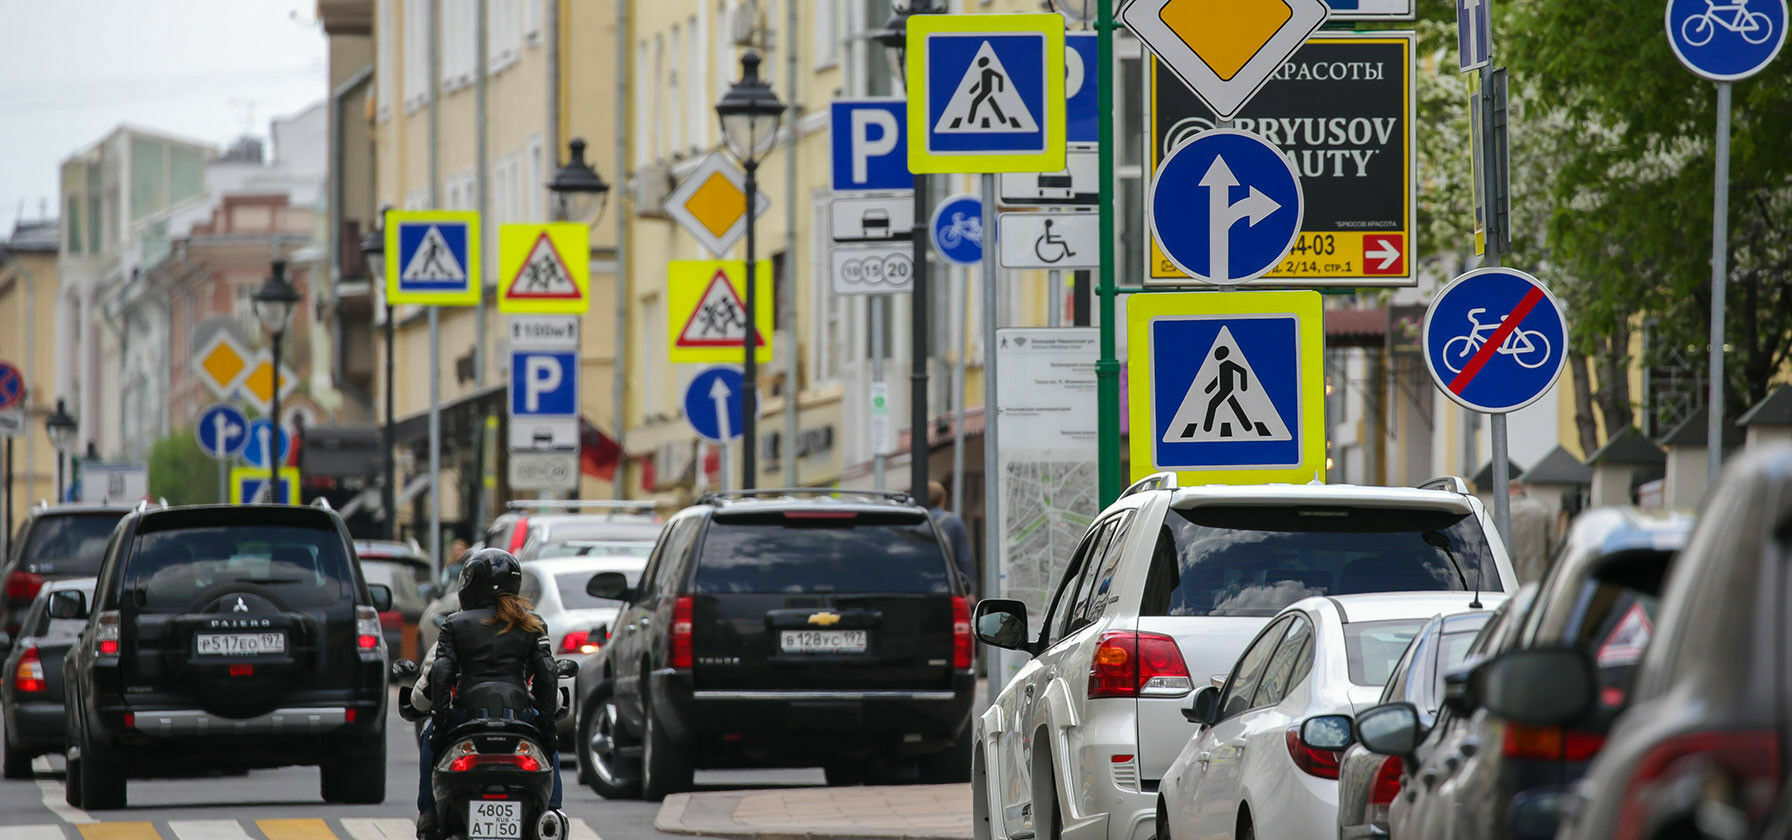 ЦОДД опробует на московских перекрёстках новые типы дорожных знаков